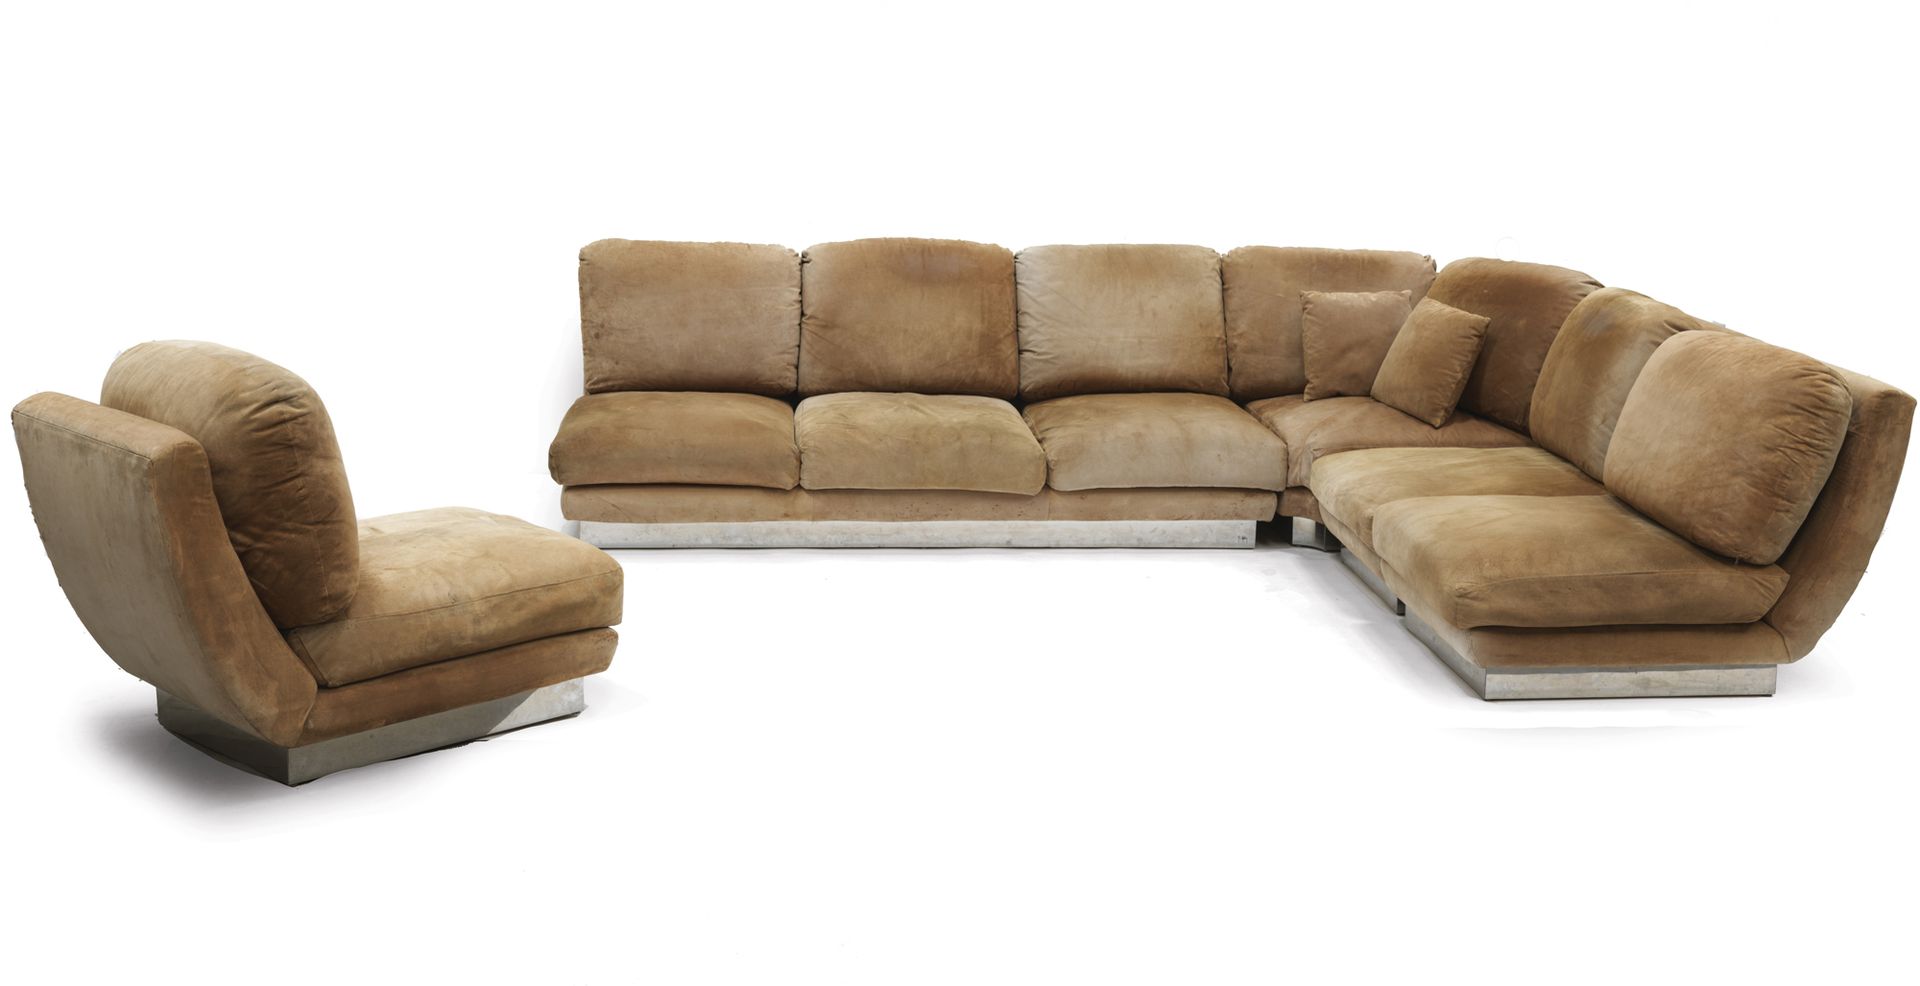 Jean-Claude MAHEY (XXe siècle) 沙发和3张扶手椅

麂皮，金属，不锈钢。 

金属底座上有签名 "JC Mahey"。

沙发：高&hellip;